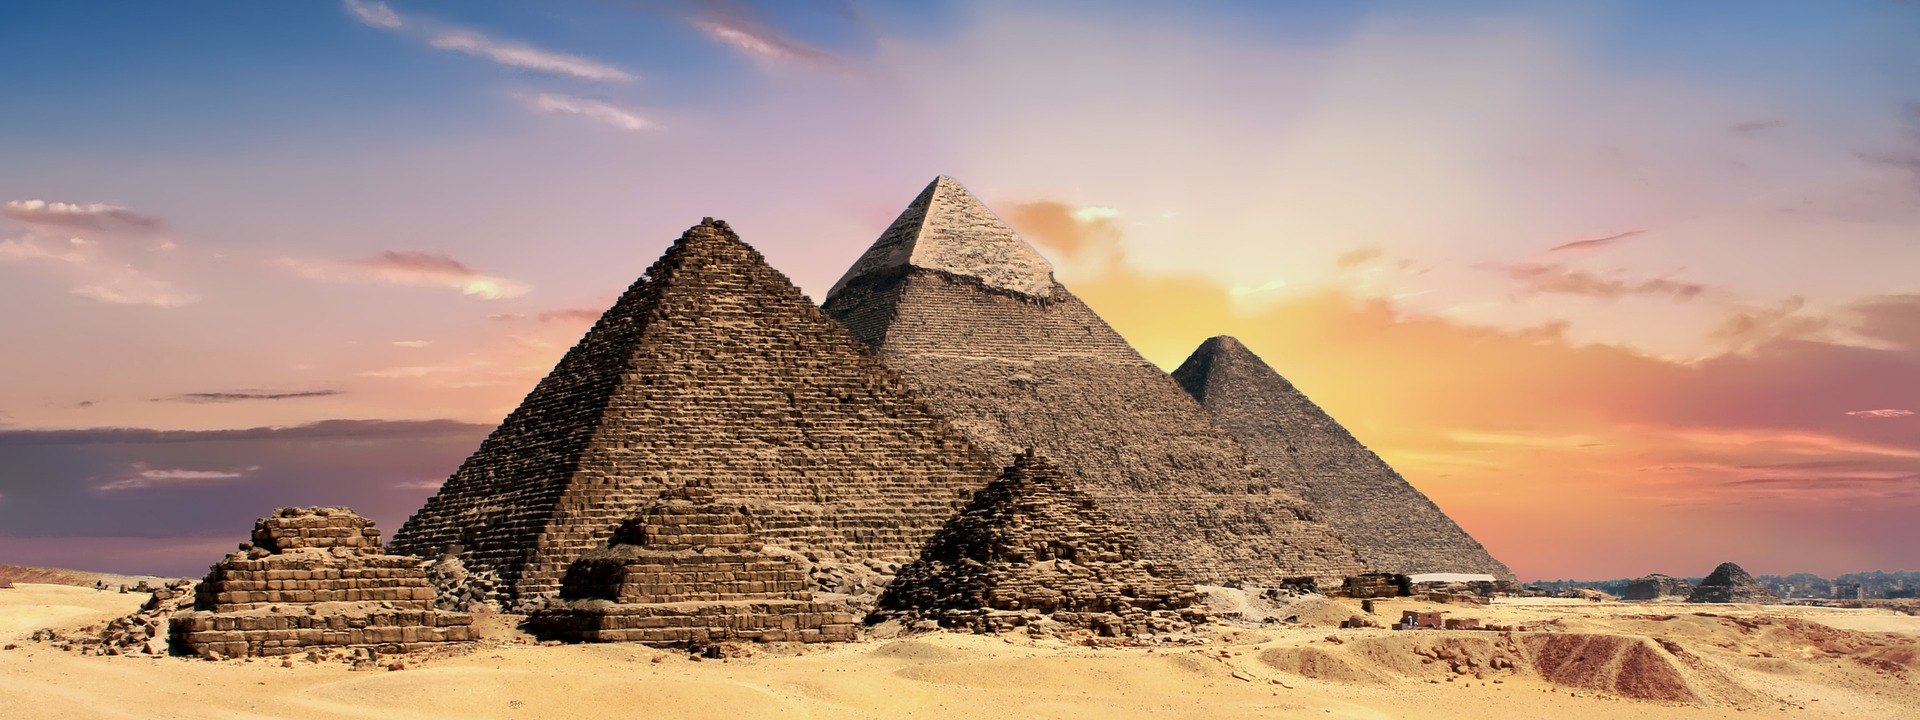 pyramids-2371501_1920.jpg